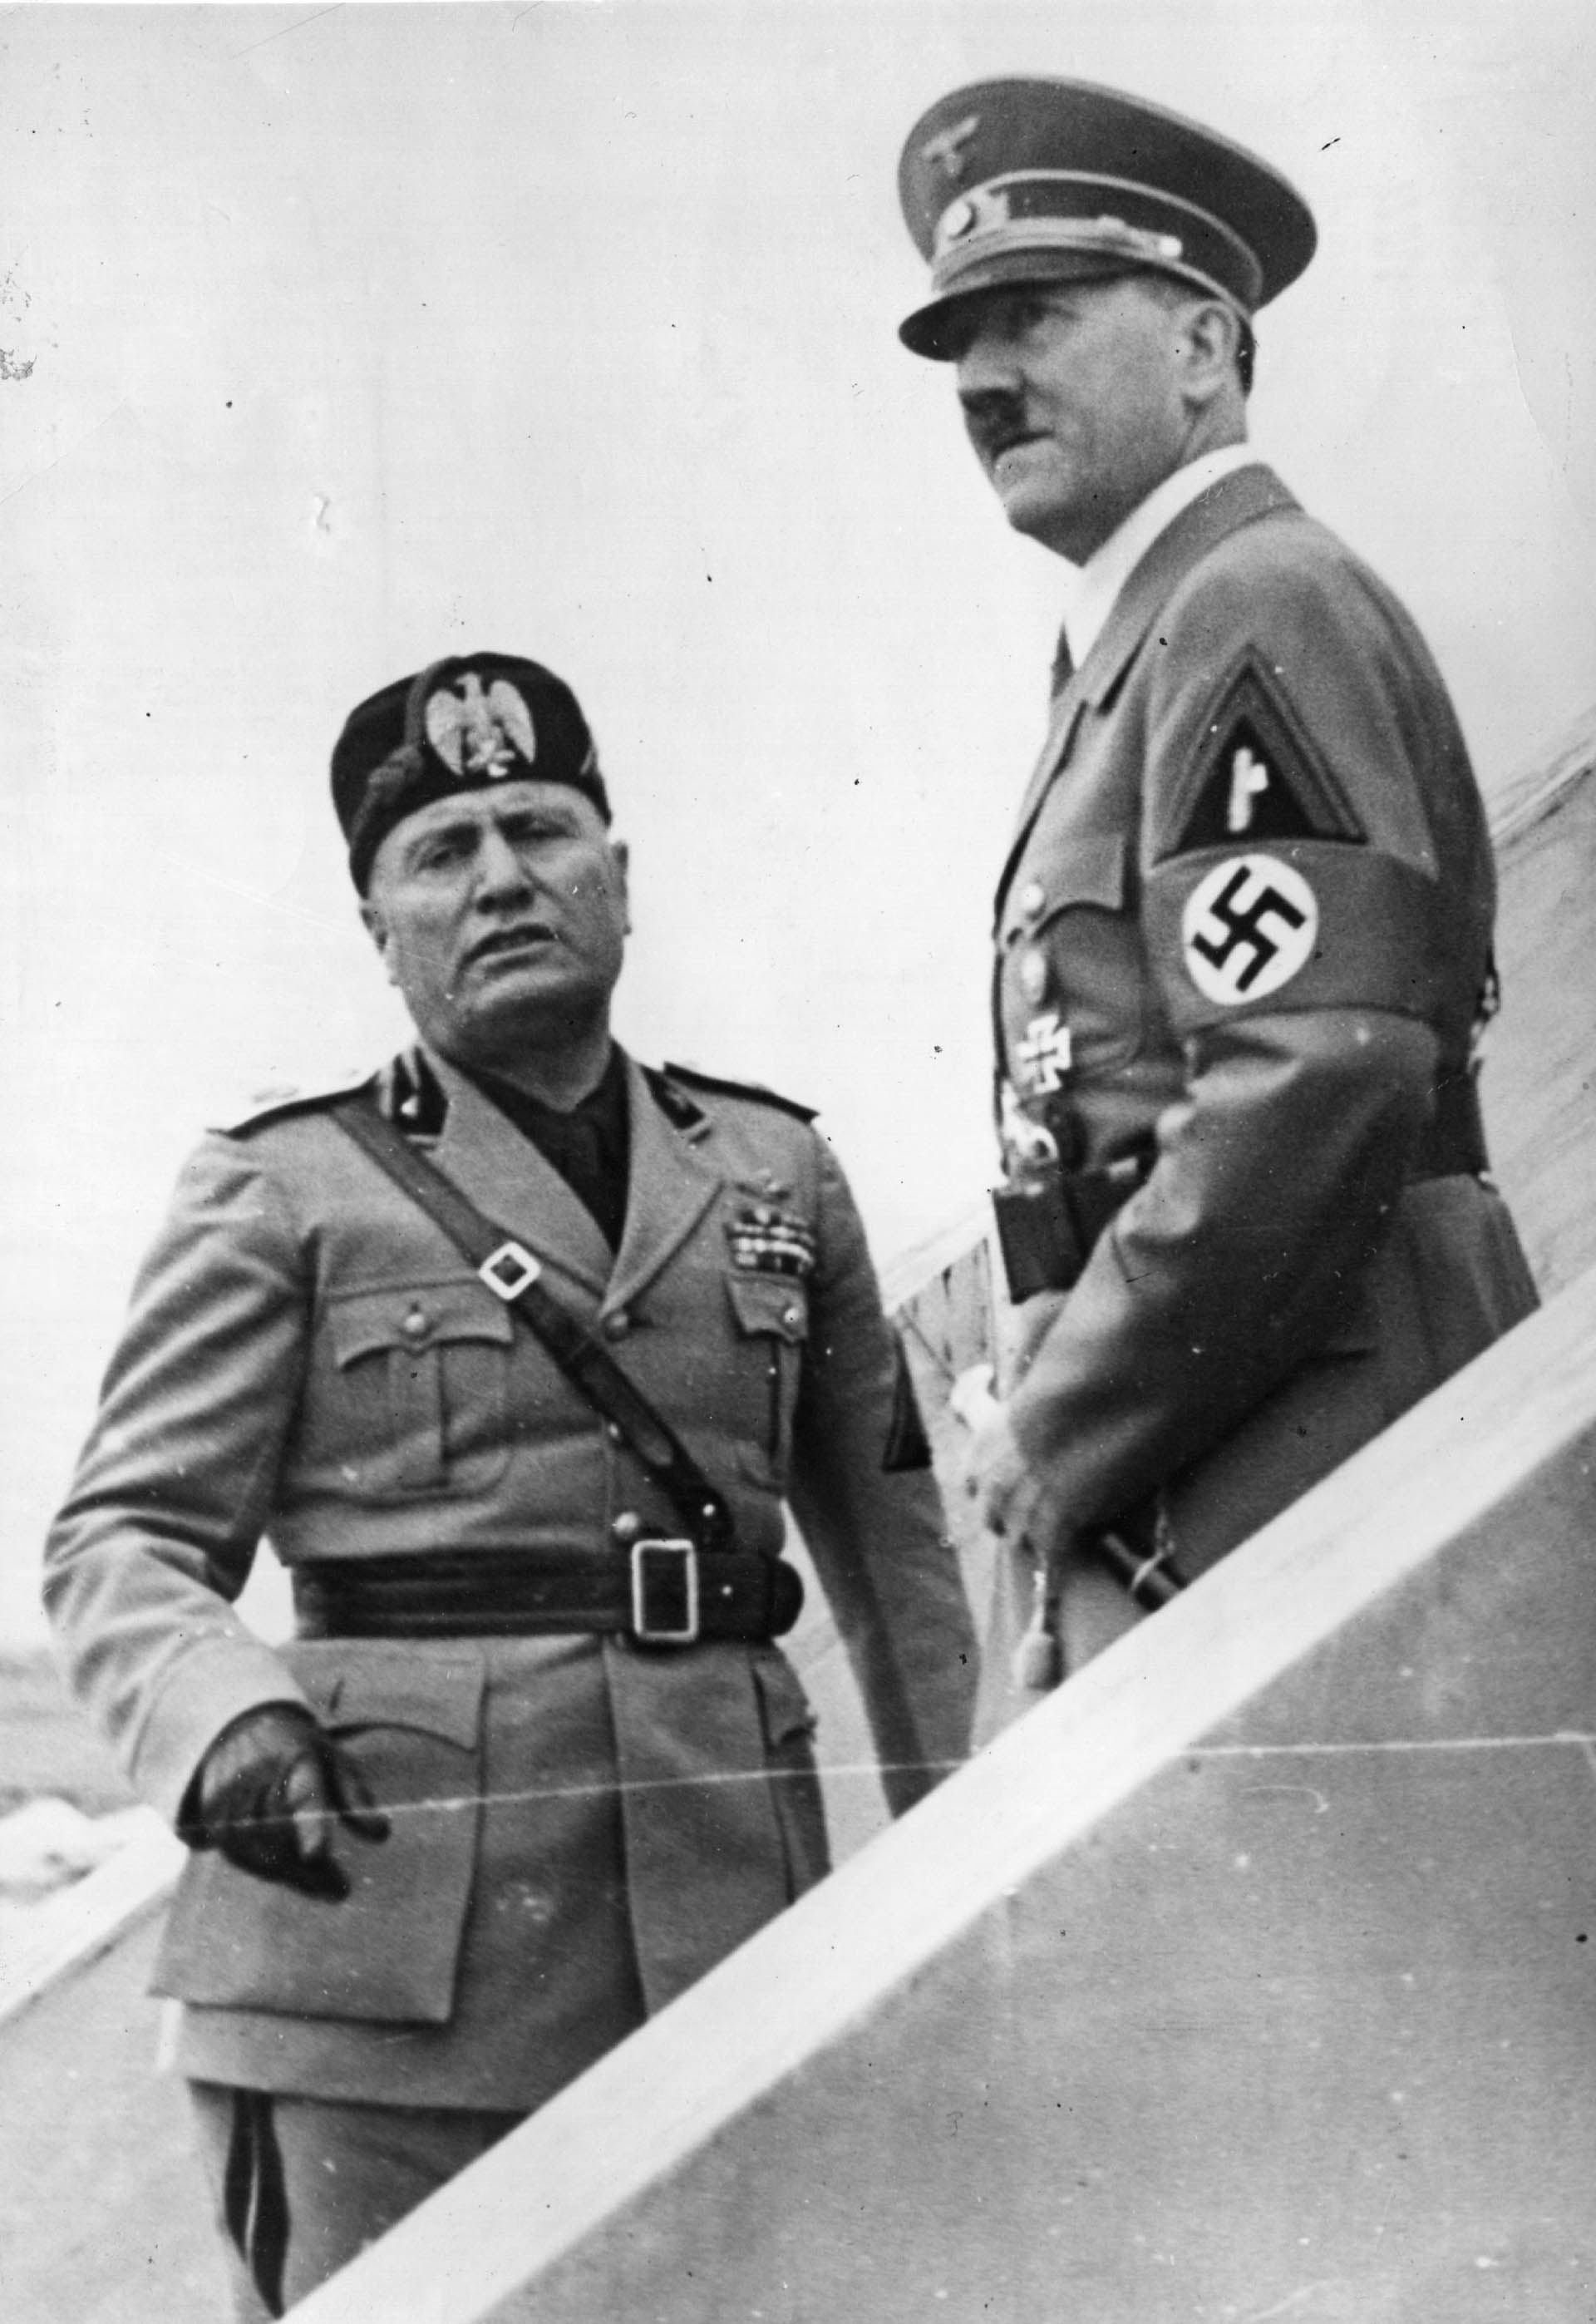 El 19 de julio de 1943, Mussolini se reunió con Hitler en la ciudad de Feltre, al norte de Italia. Ya estaba enfermo y deprimido, y no obtuvo la ayuda que esperaba del Führer para detener a las tropas aliadas, que habían desembarcado nueve días antes en Sicilia (Topical Press Agency/Getty Images)